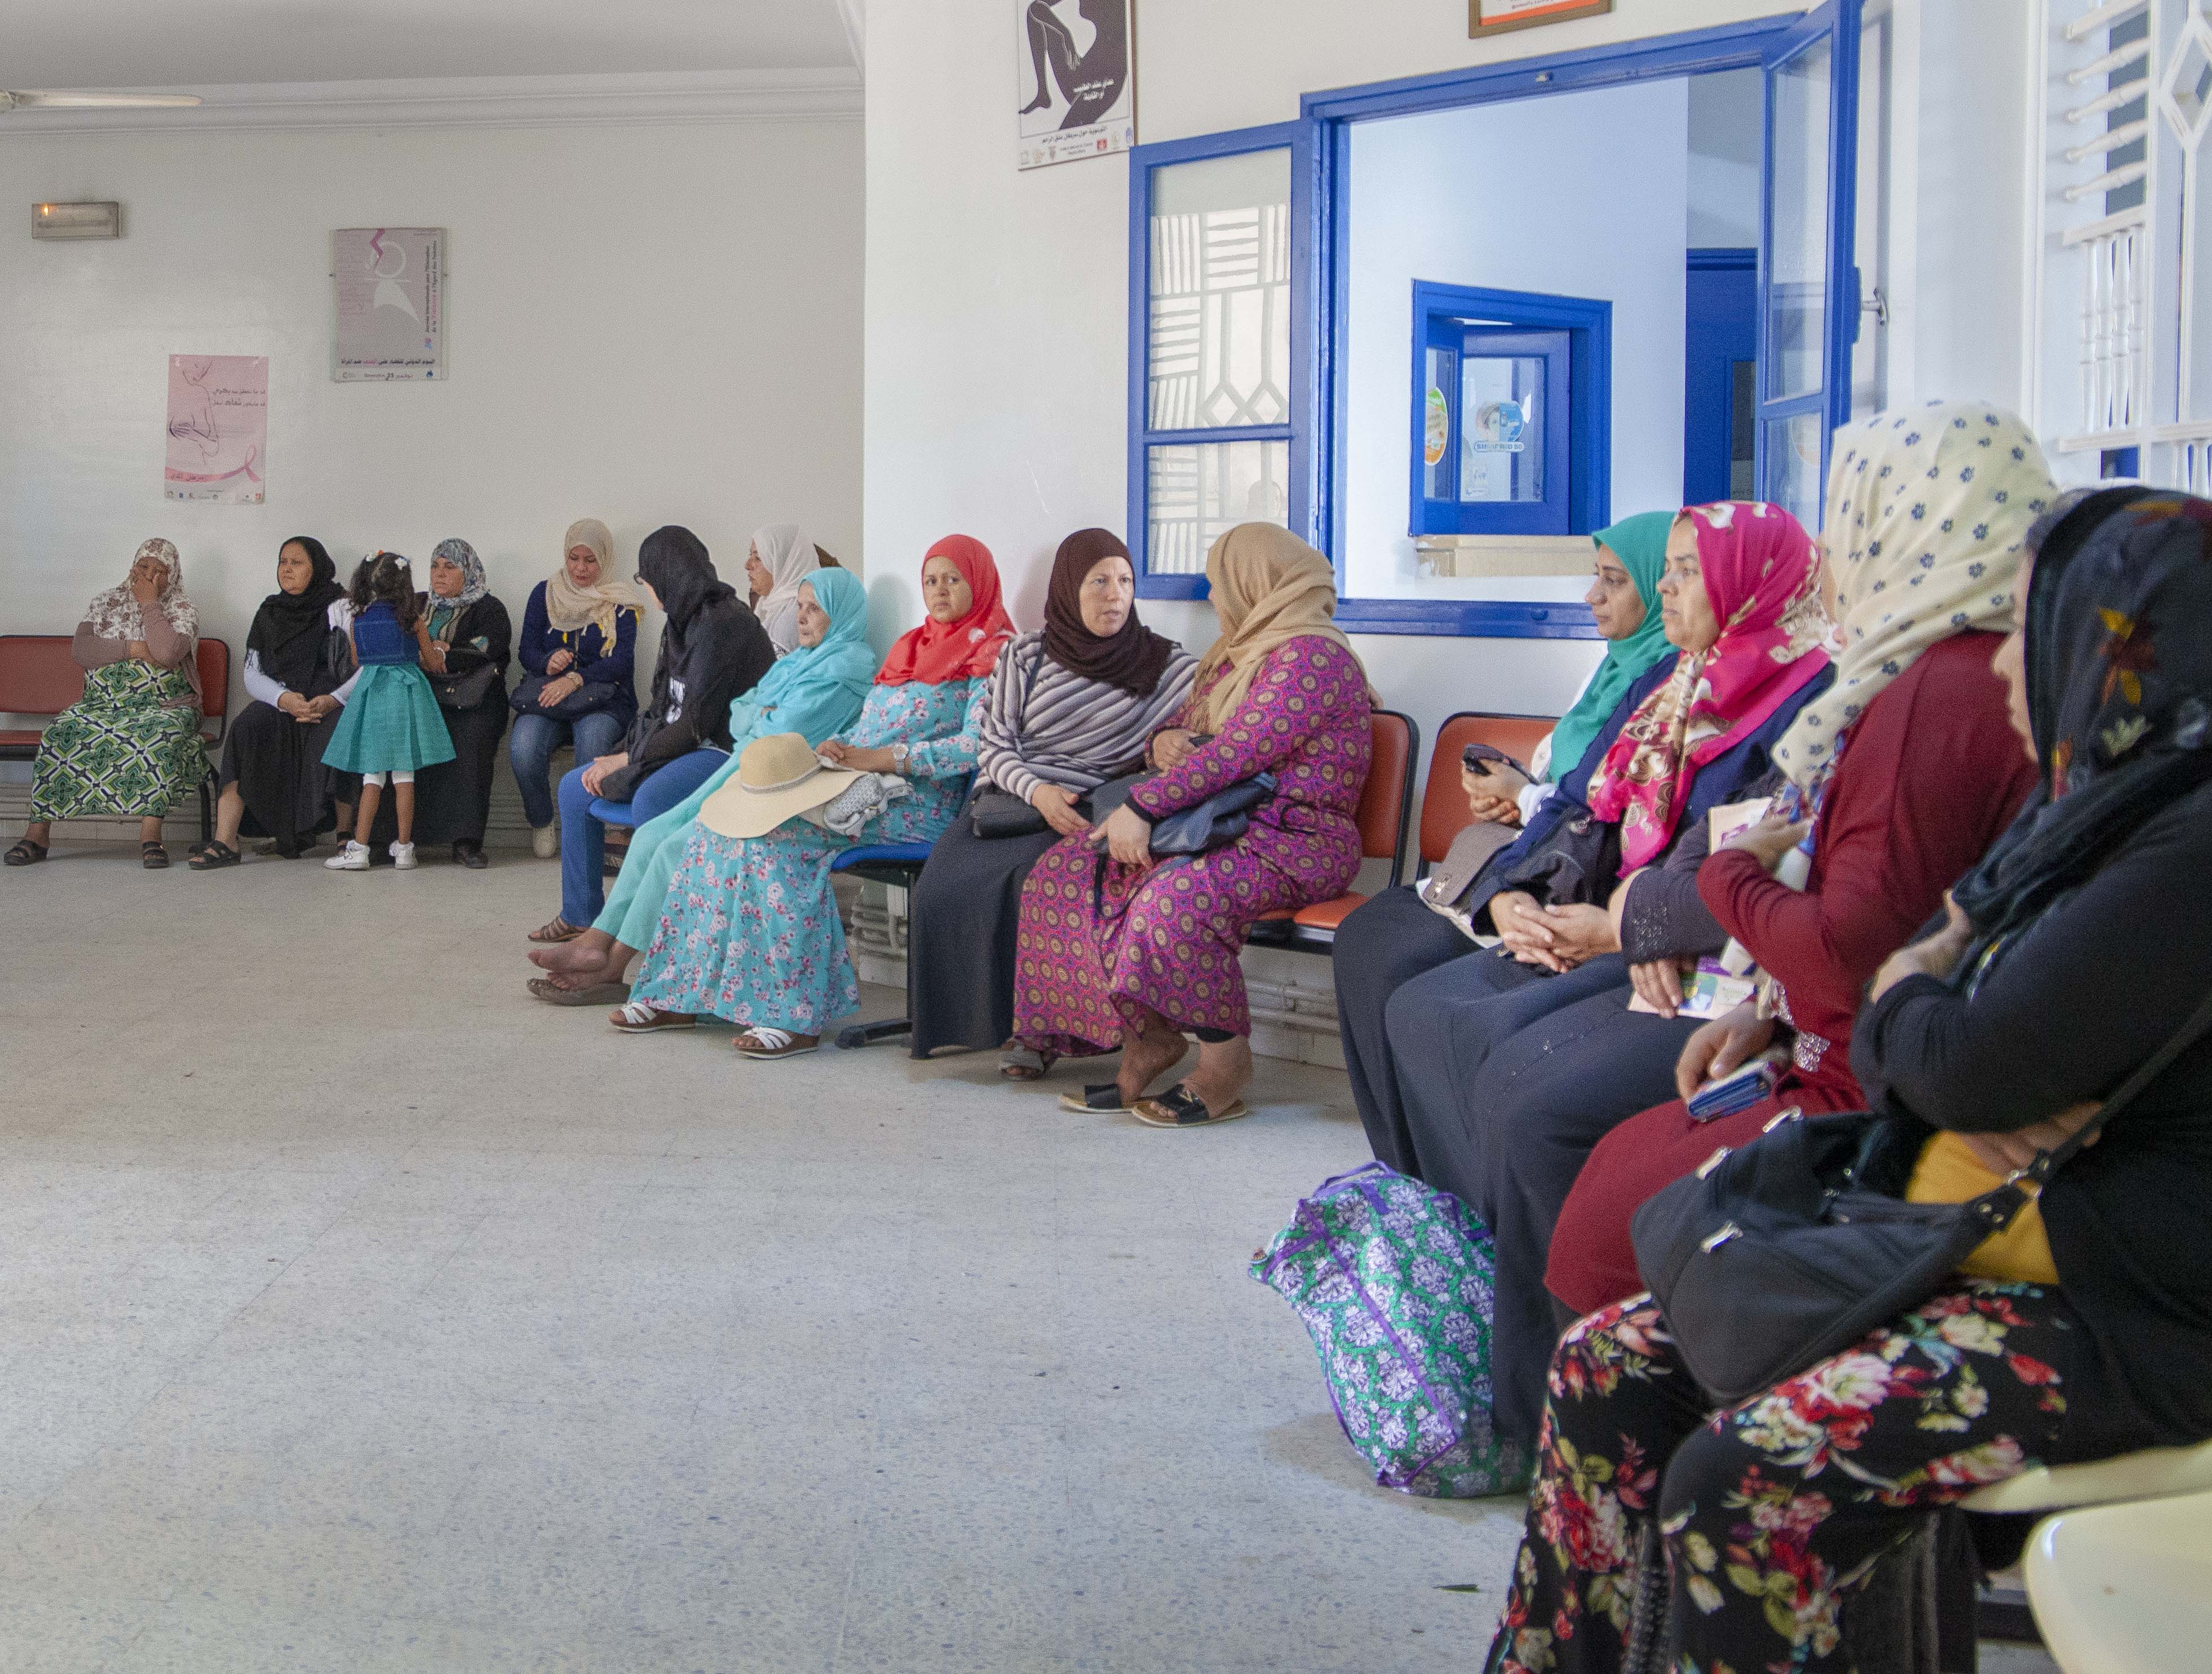 نساء تونسيات في مركز لتنظيم الأسرة. © صندوق الأمم المتحدة للسكان تونس